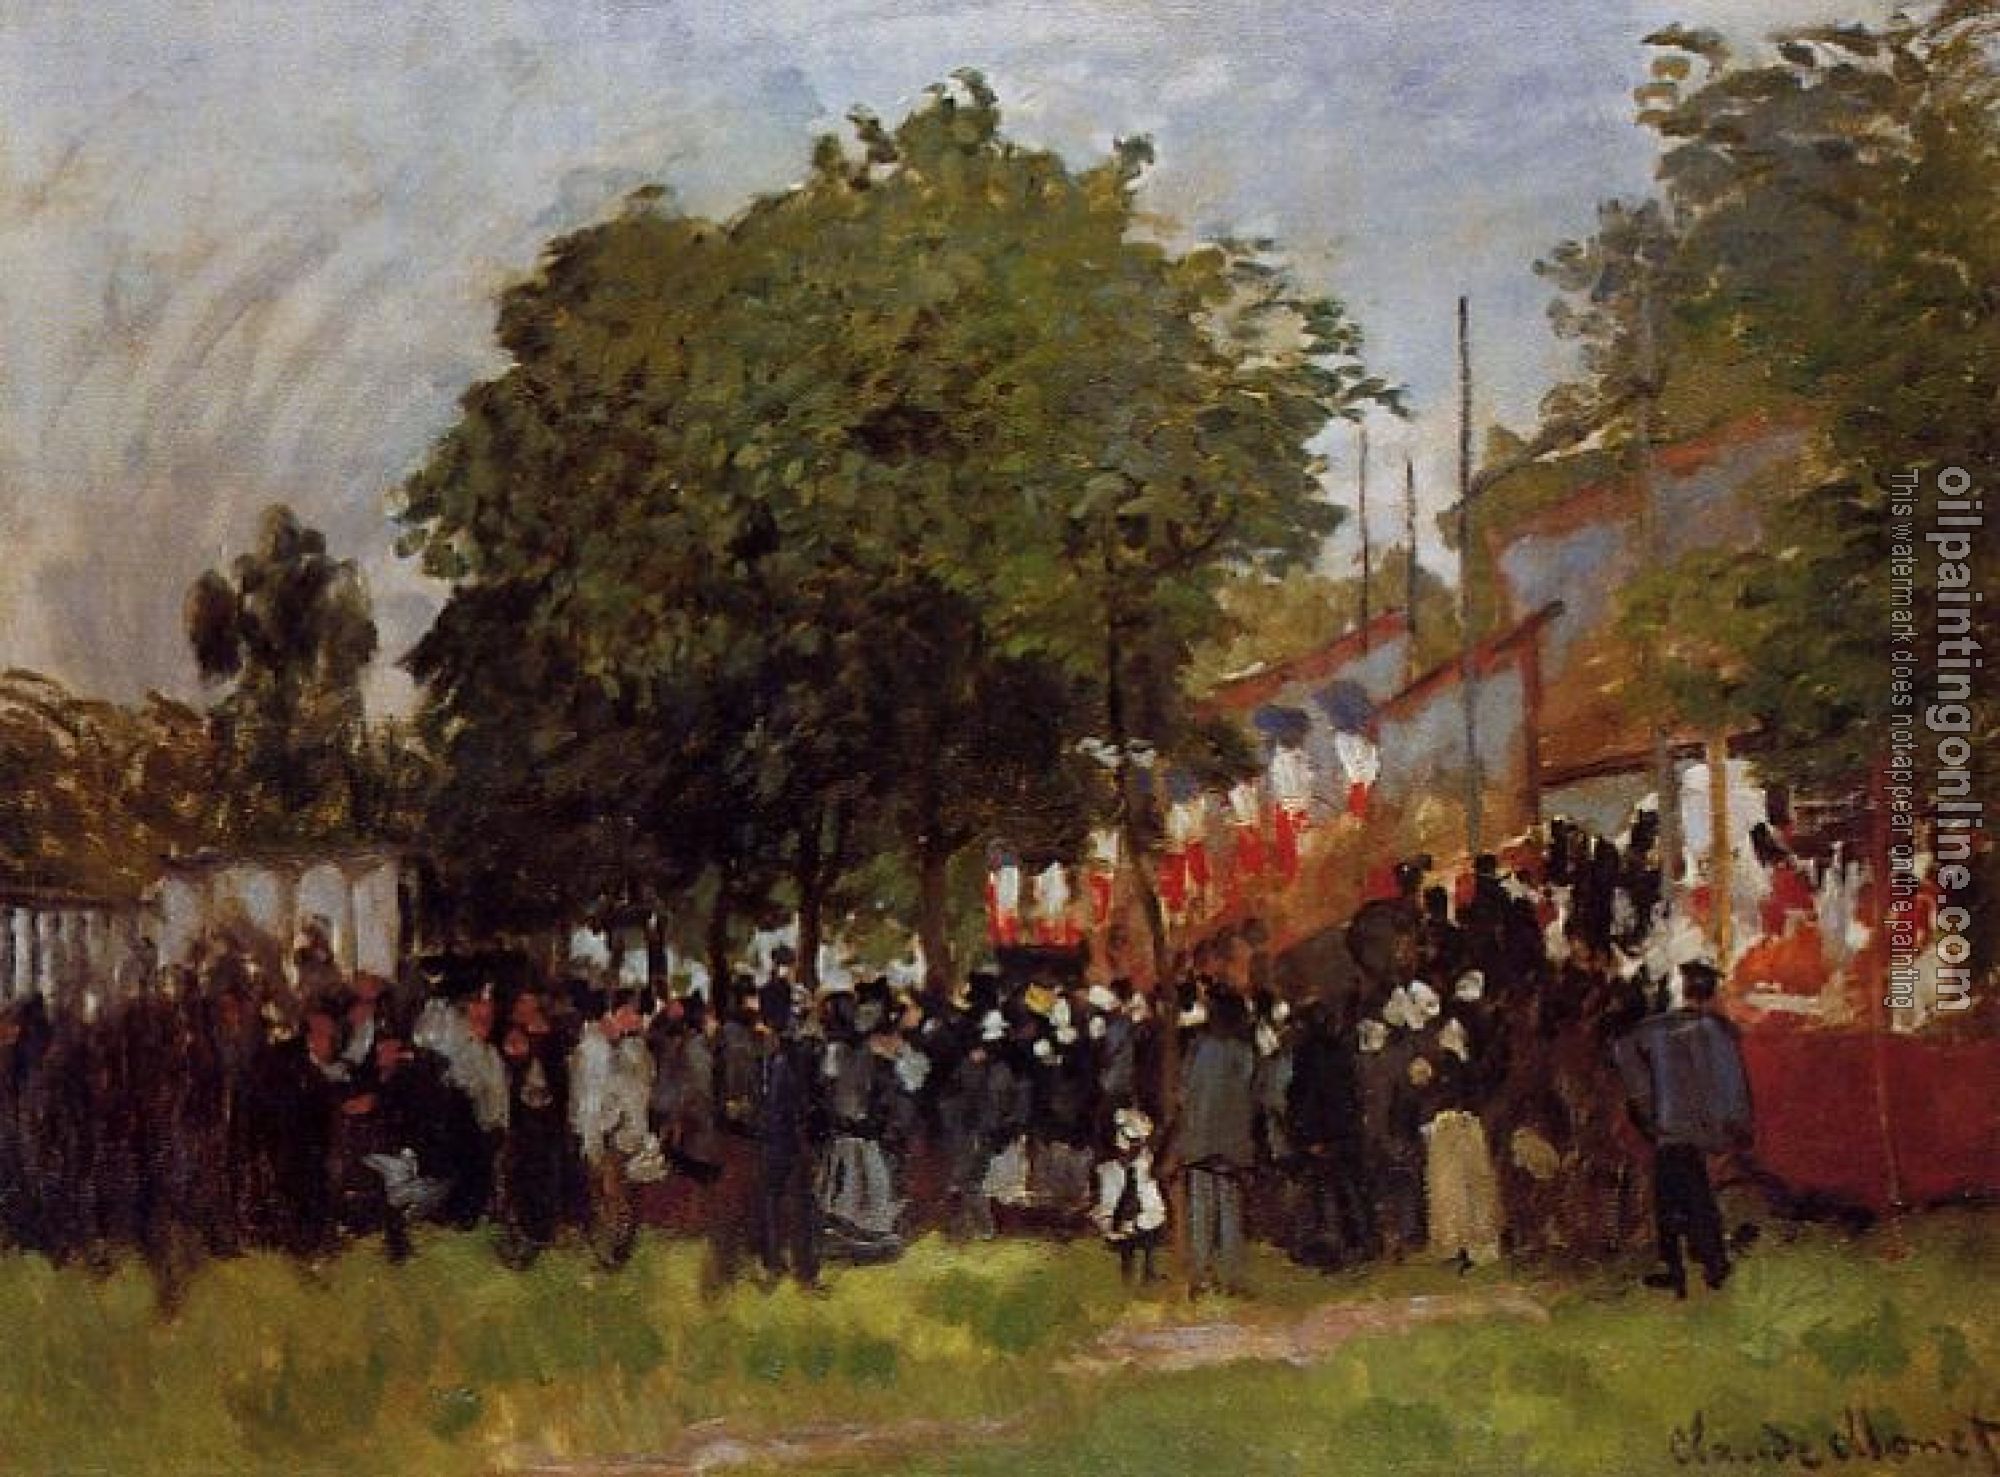 Monet, Claude Oscar - Fete at Argenteuil